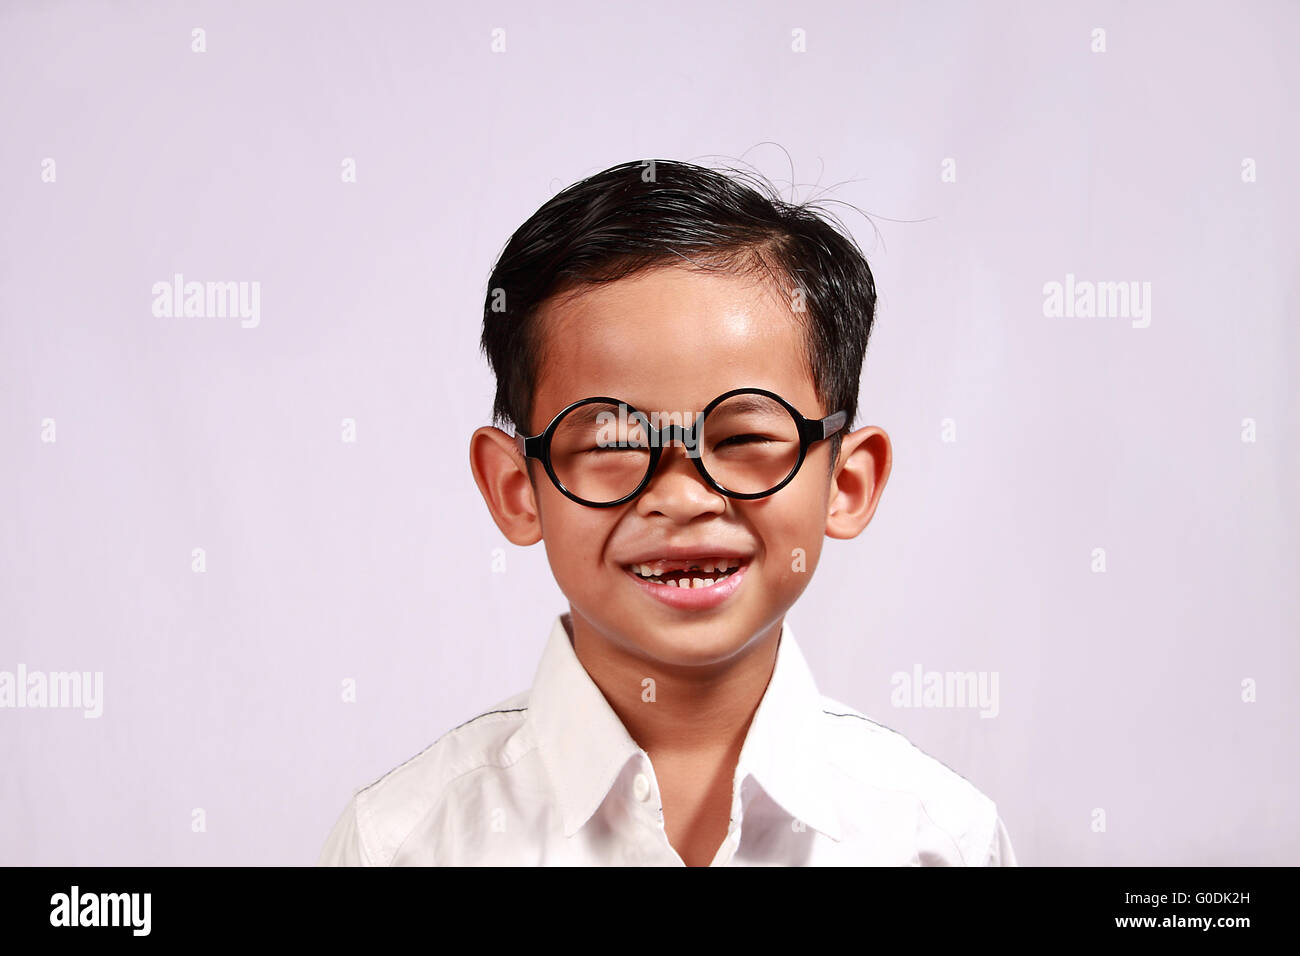 Ritratto di giovane ragazzo asiatico con gli occhiali che mostra il suo sorriso adorabile Foto Stock